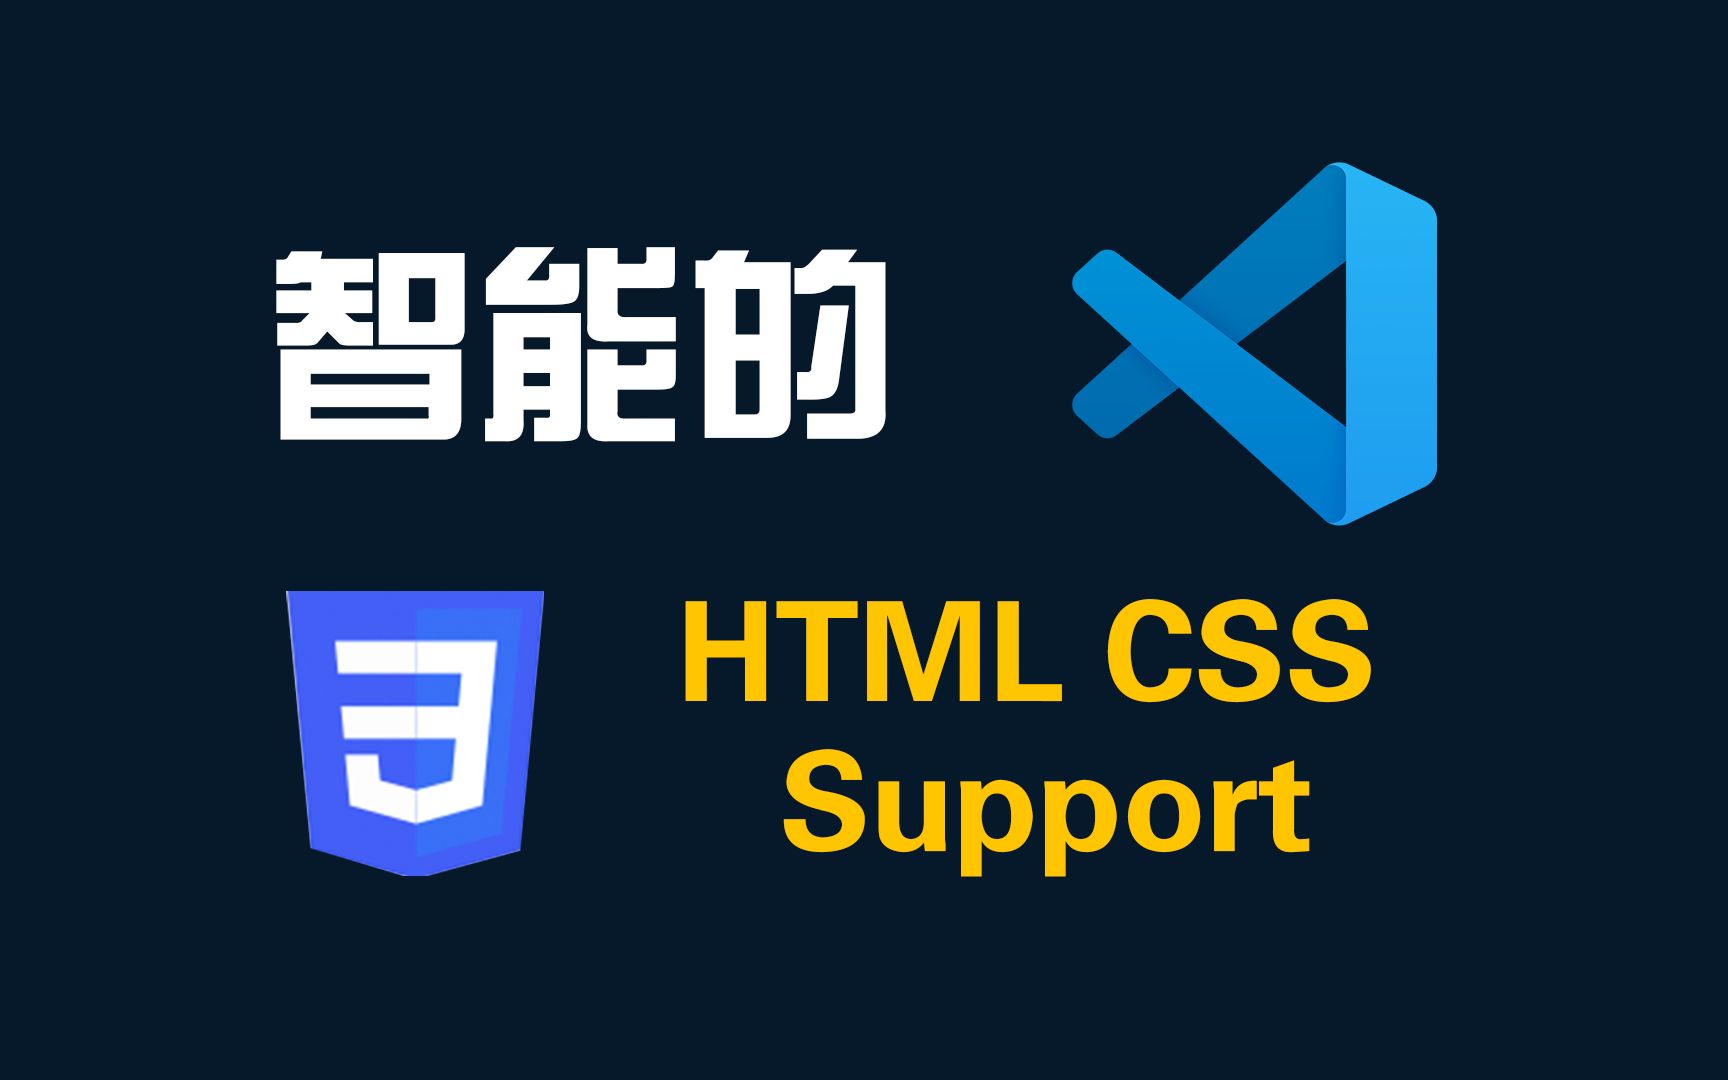 三分钟学会使用VSCode插件HTML CSS Support完整教程-Web前端开发